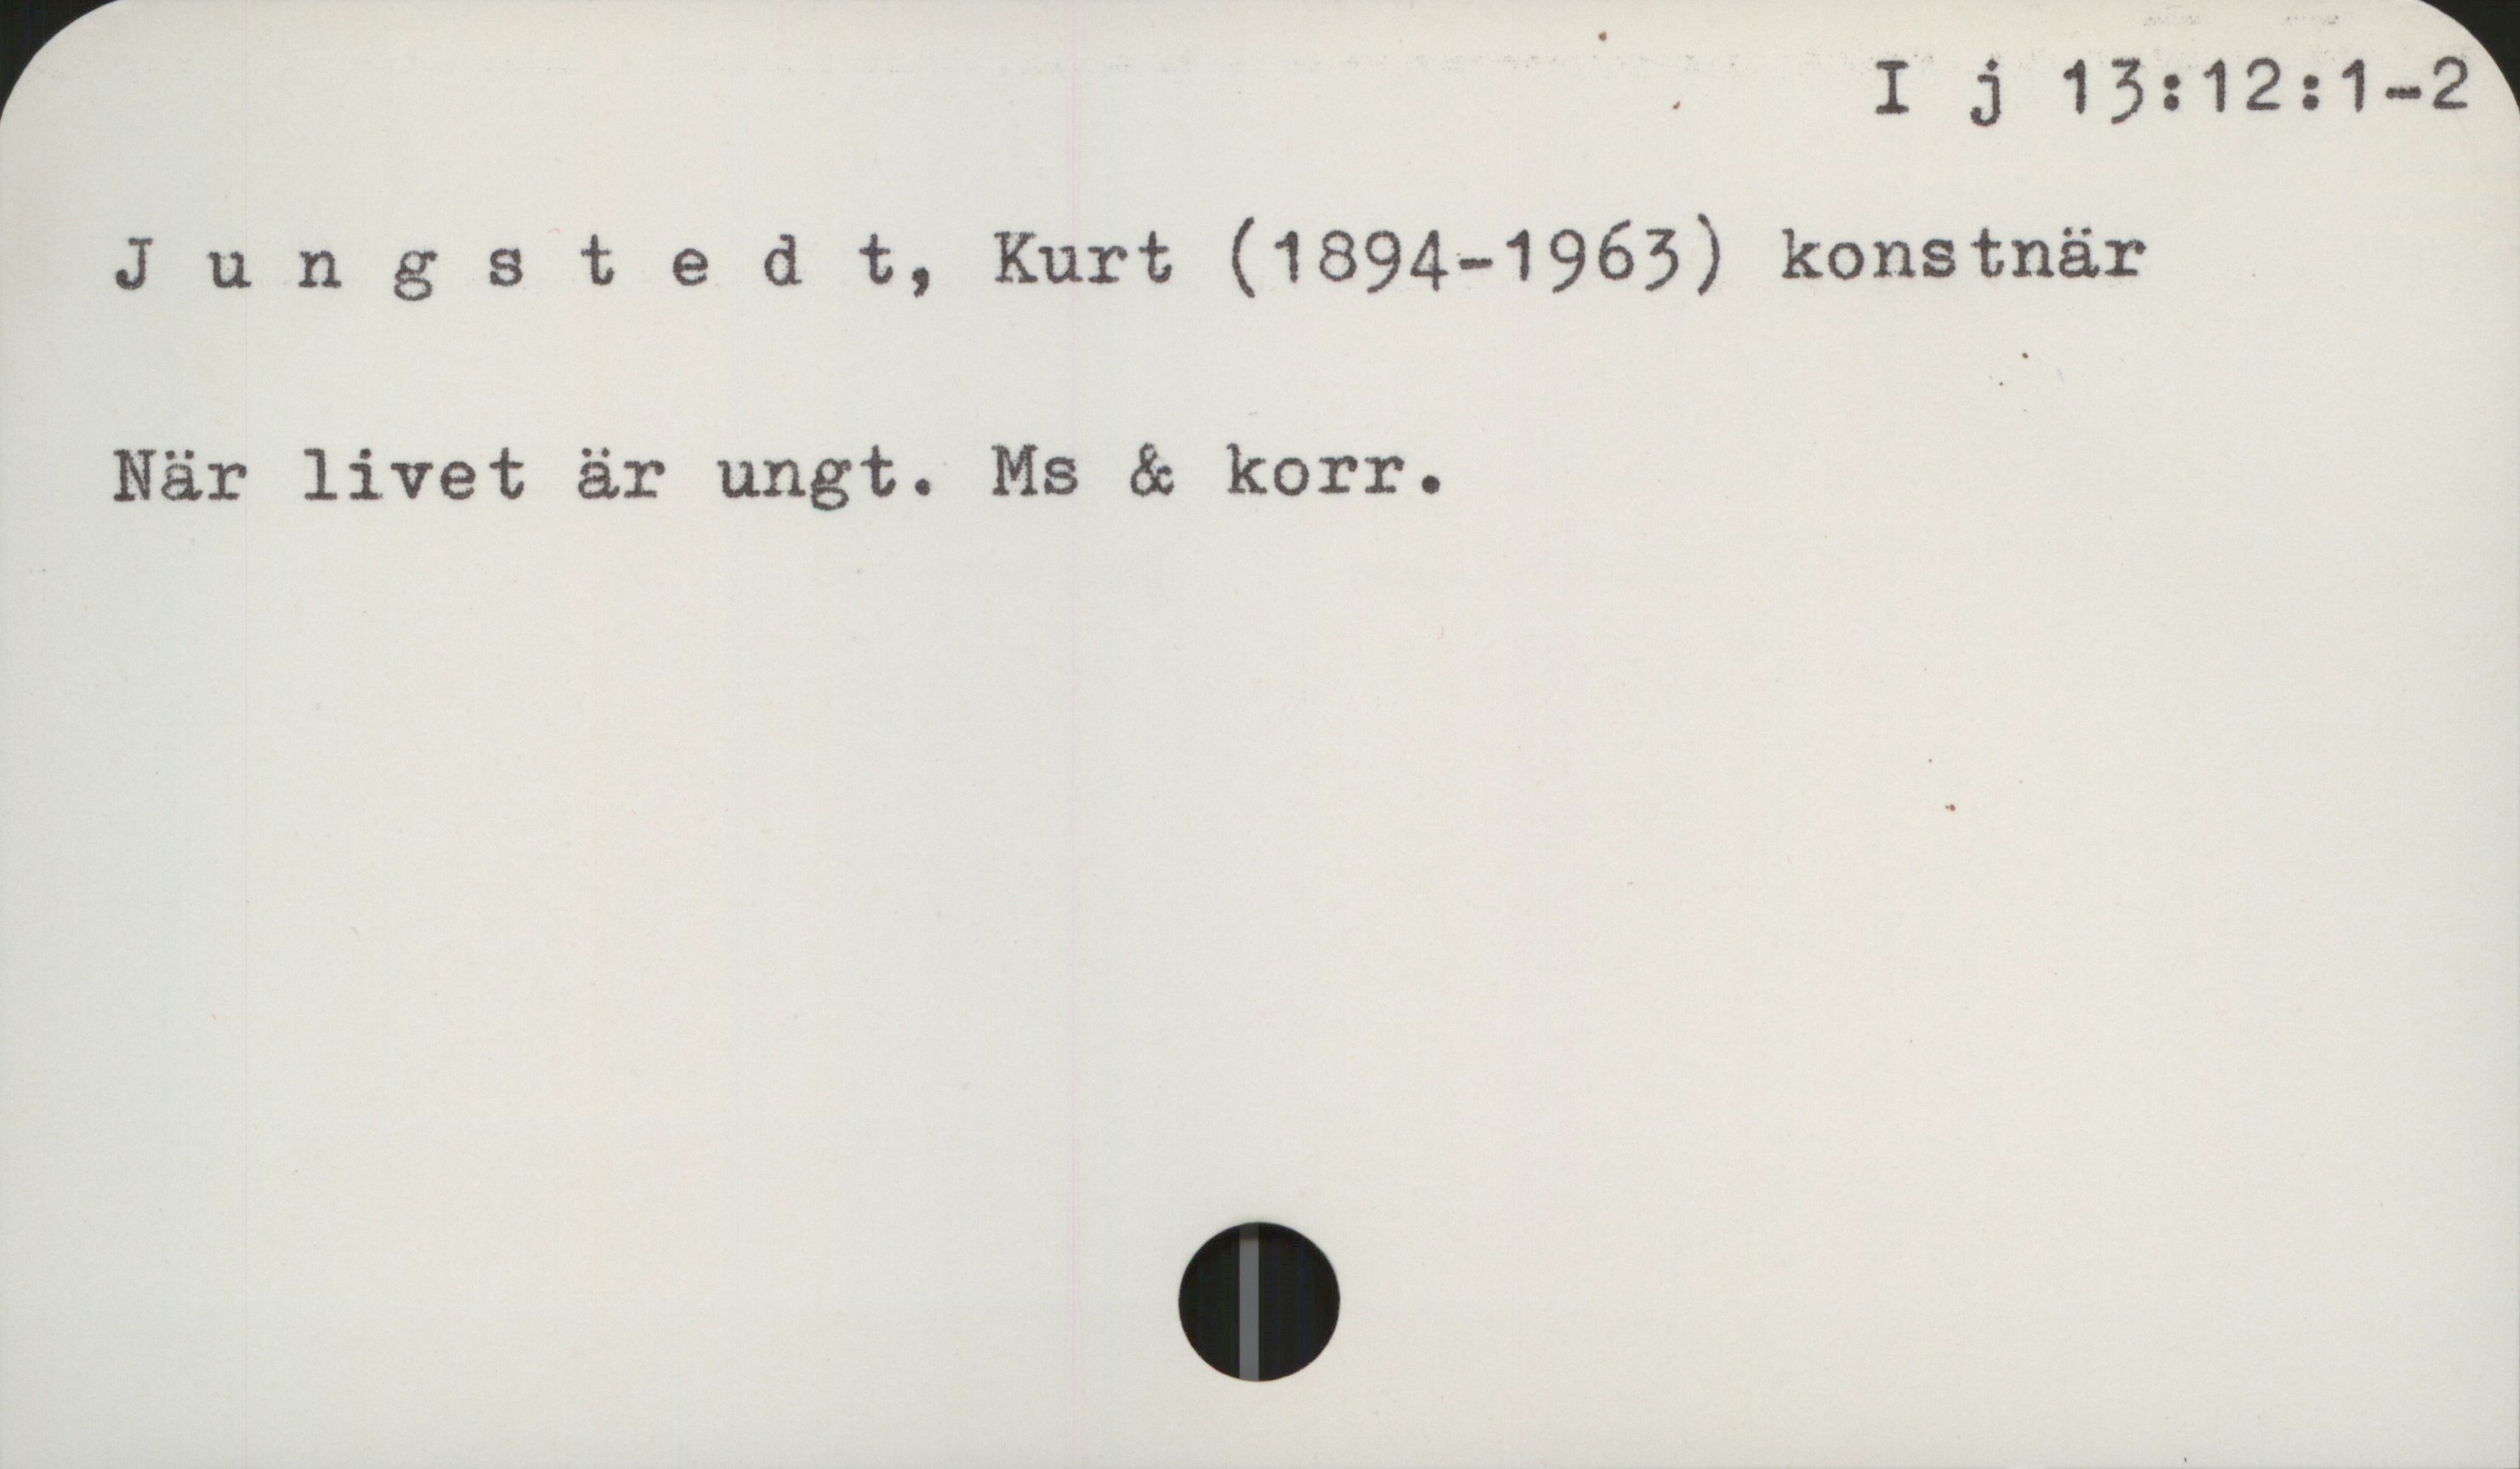 Jungstedt, Kurt (1894-1963) I j 13: 12: 1-2

Jungstedt, Kurt (1894-1963) konstnär

När livet är ungt. Ms & korr.